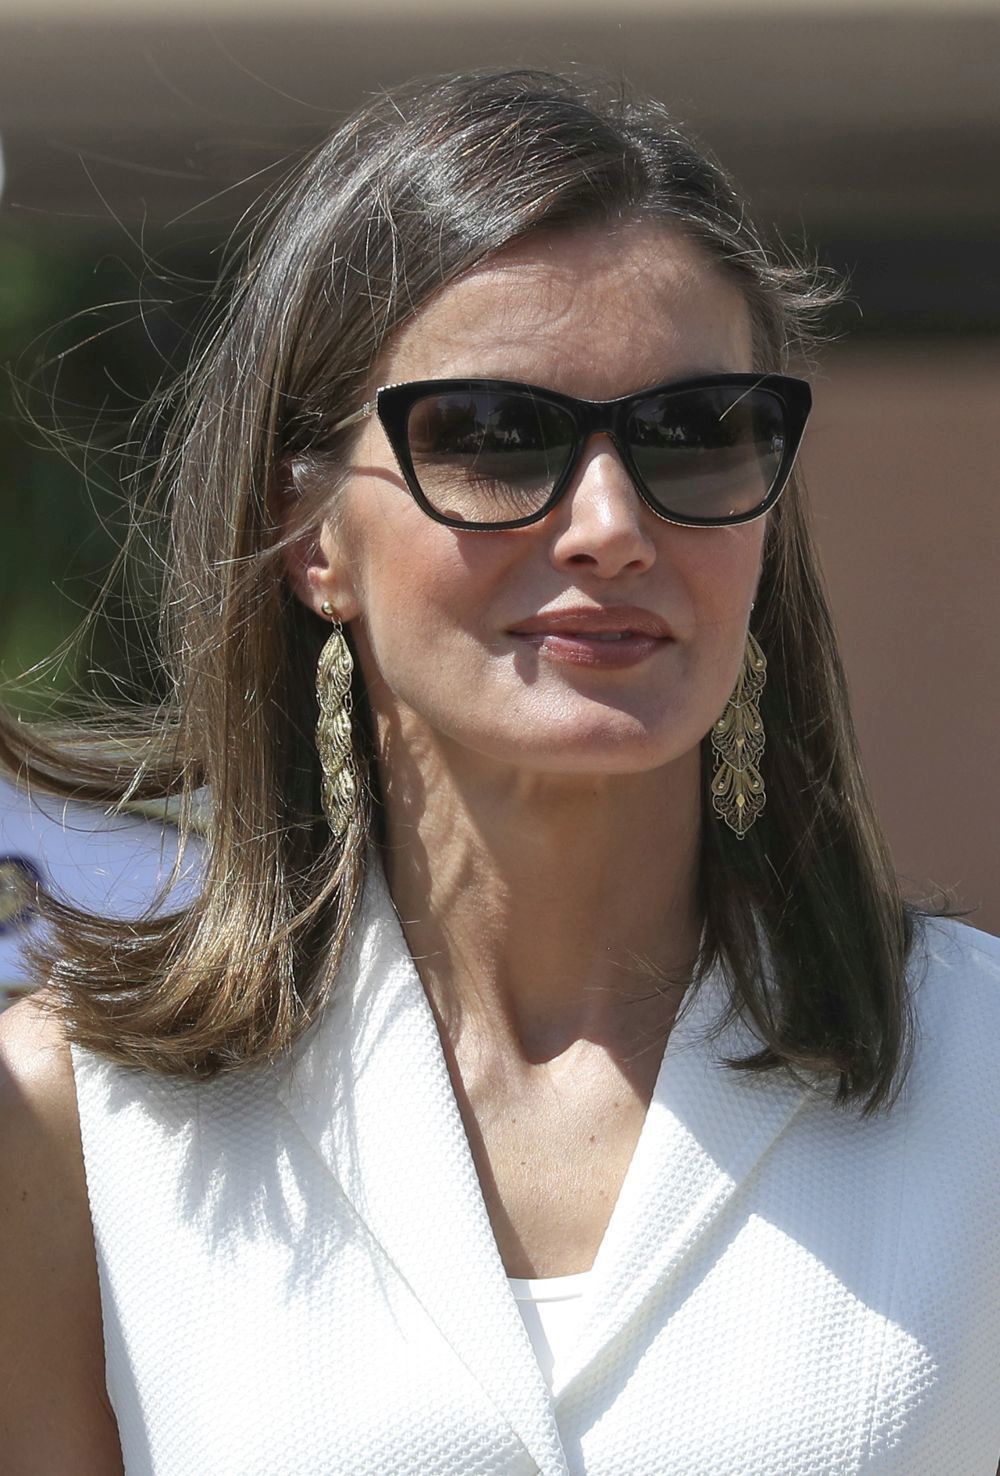 Te puede interesar: De la reina Letizia a Carolina de Mónaco, estas son las gafas de sol favoritas de las royals